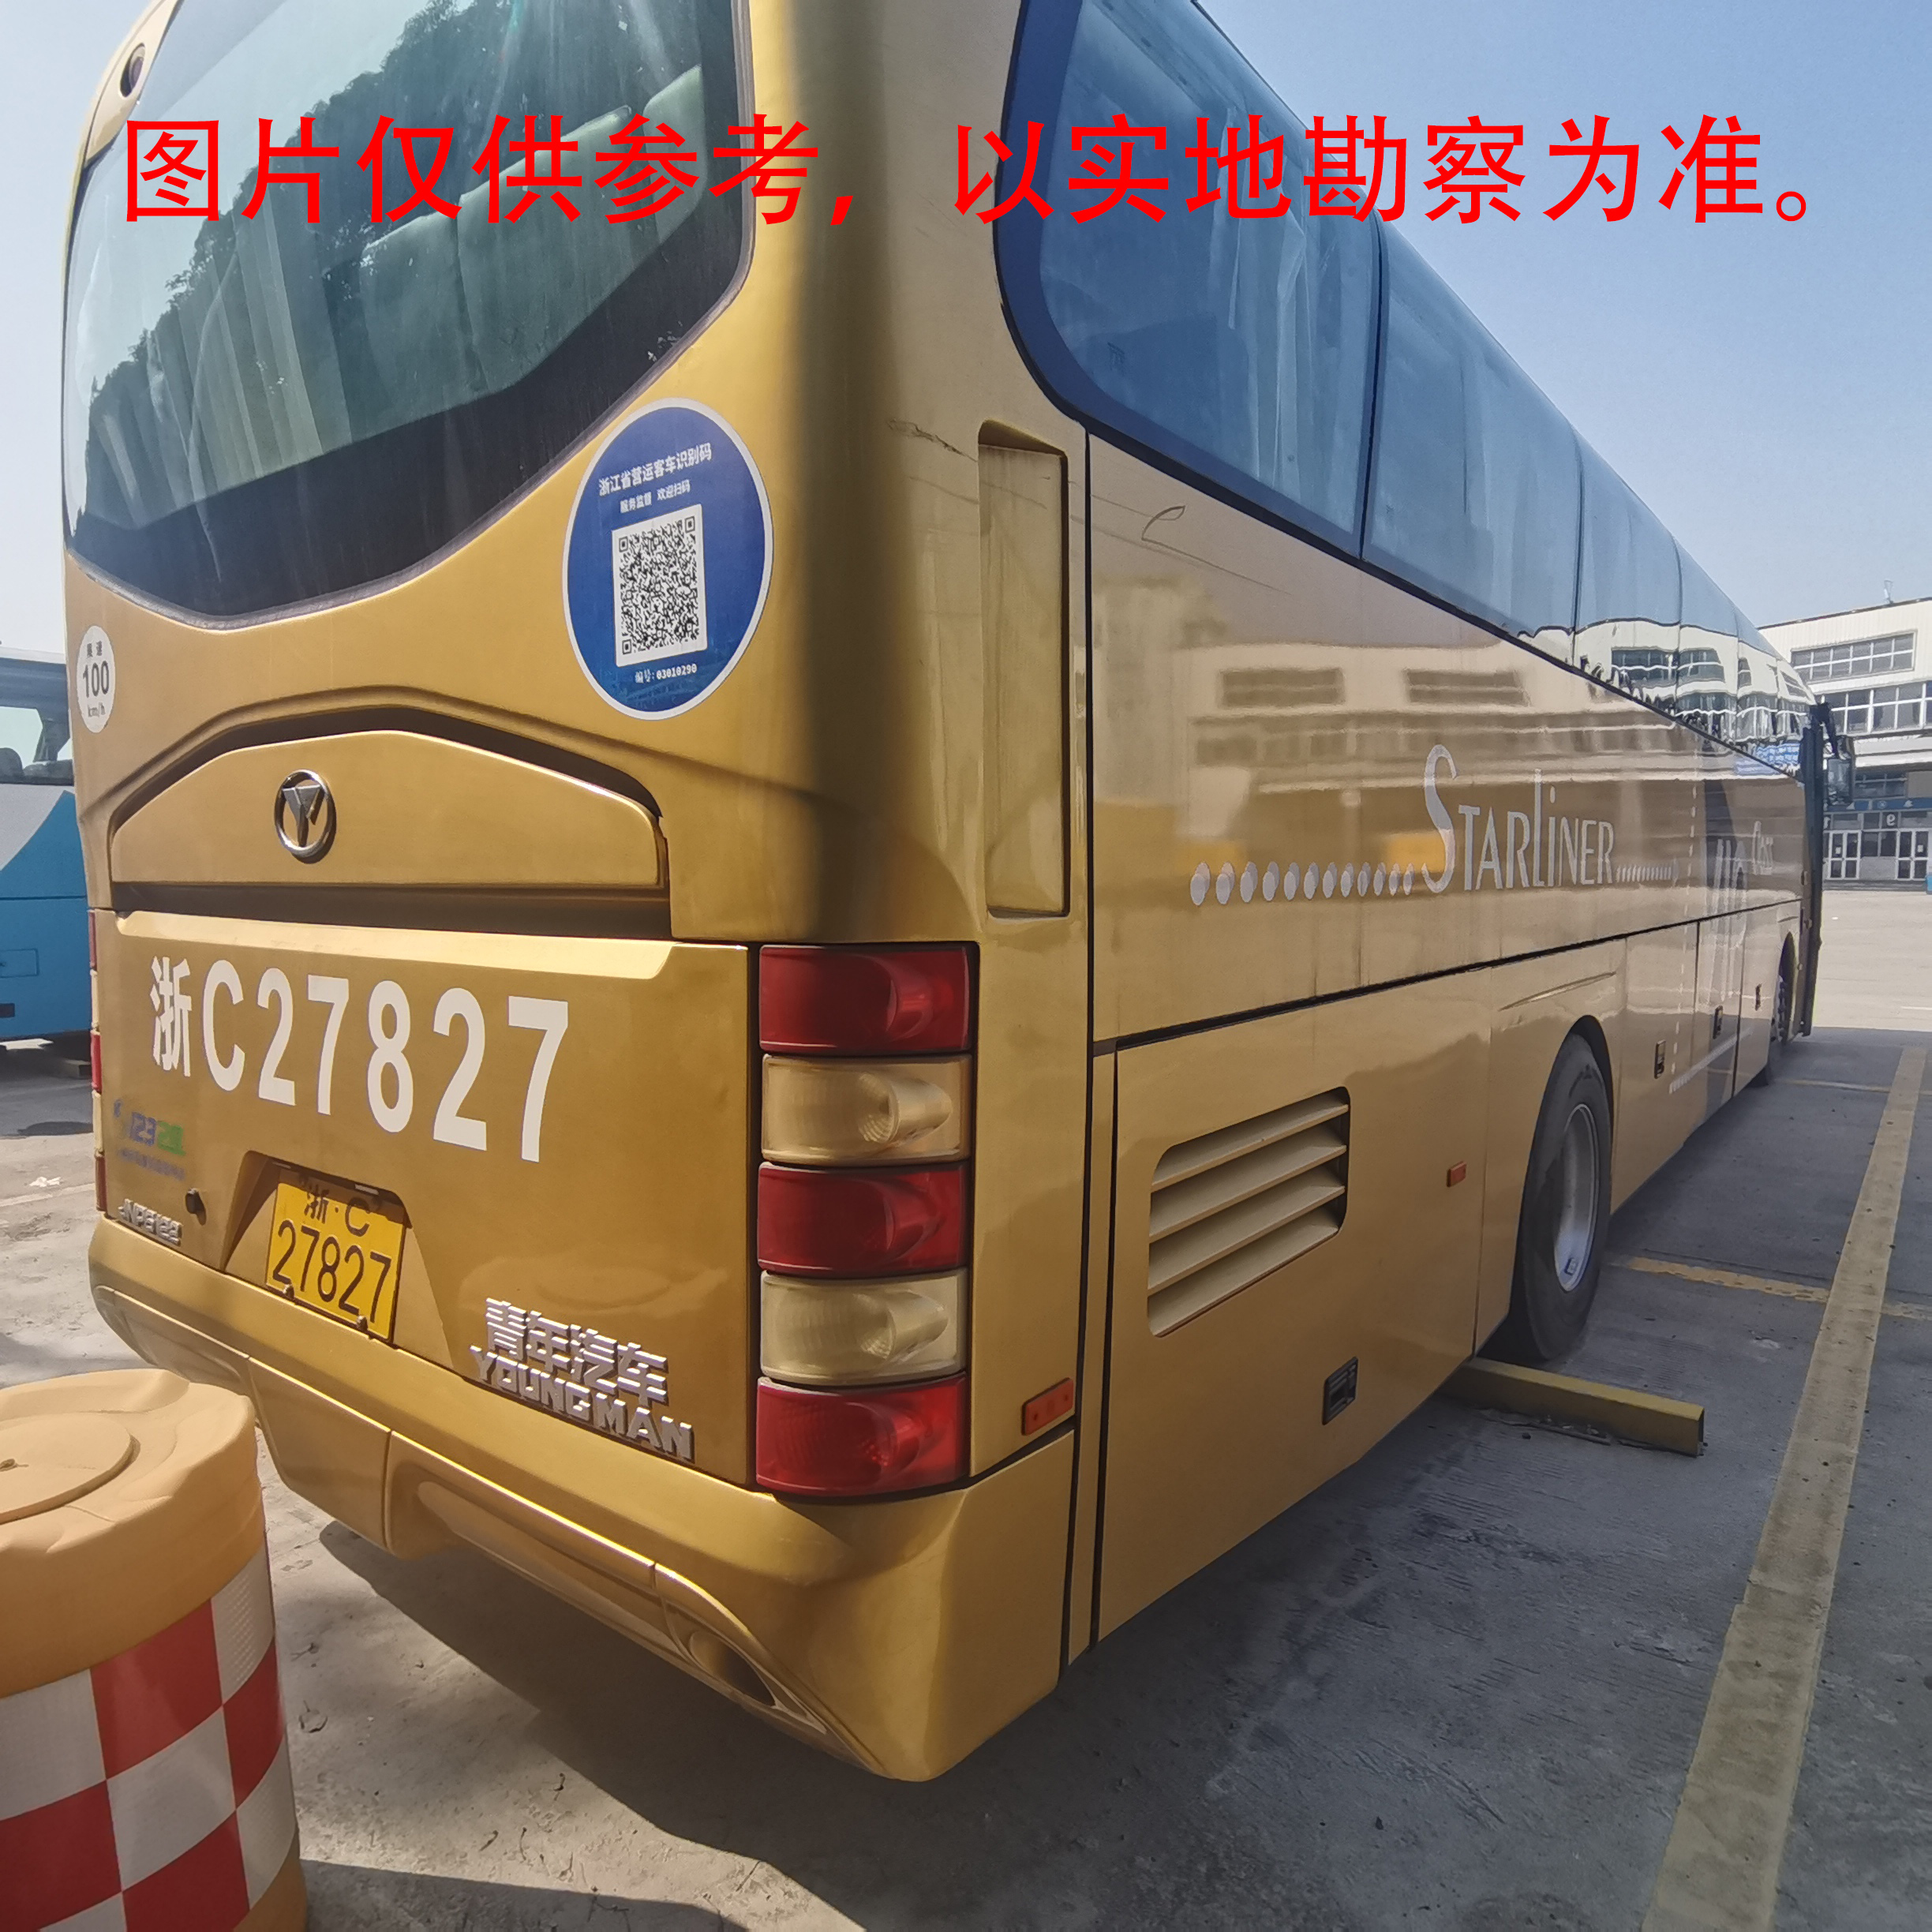 浙C27827青年牌大型普通客车转让出售招标